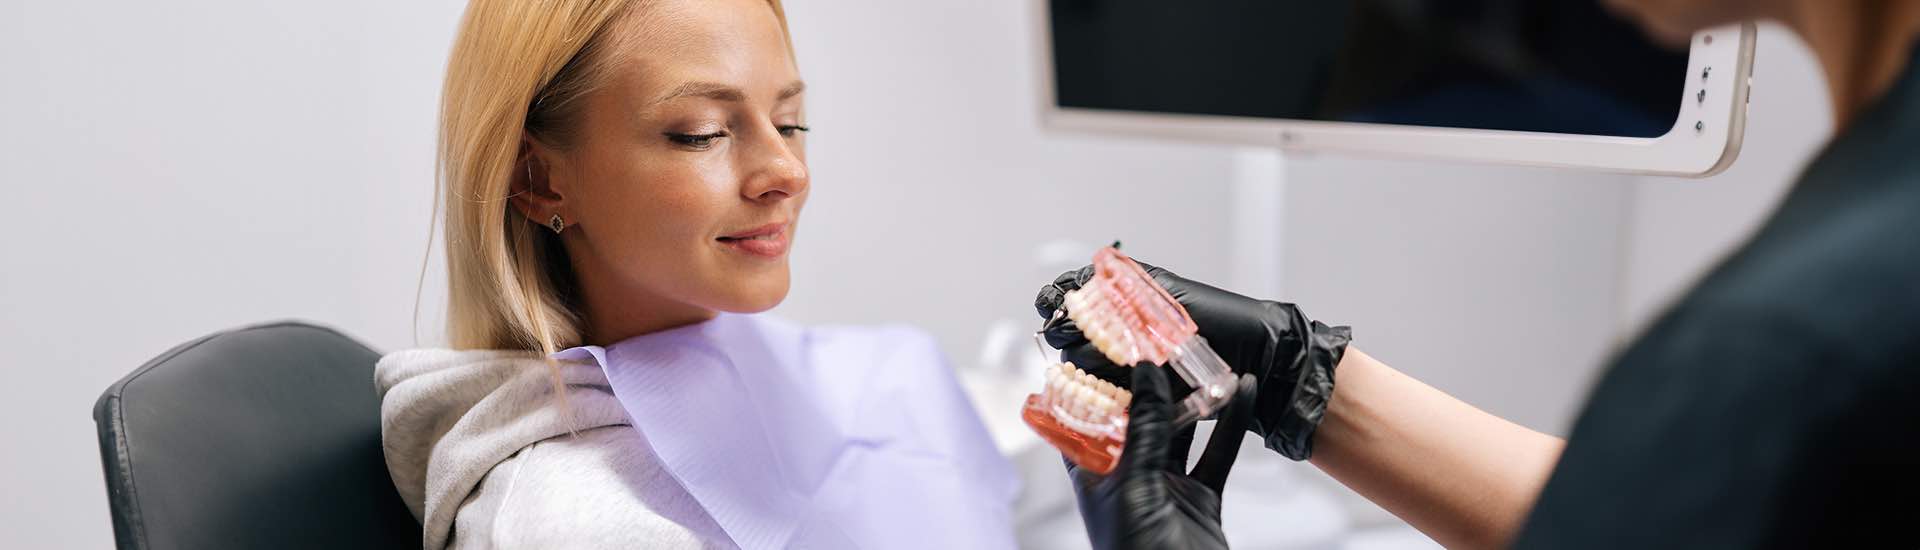 Aparat ortodontyczny plusy i minusy – part II